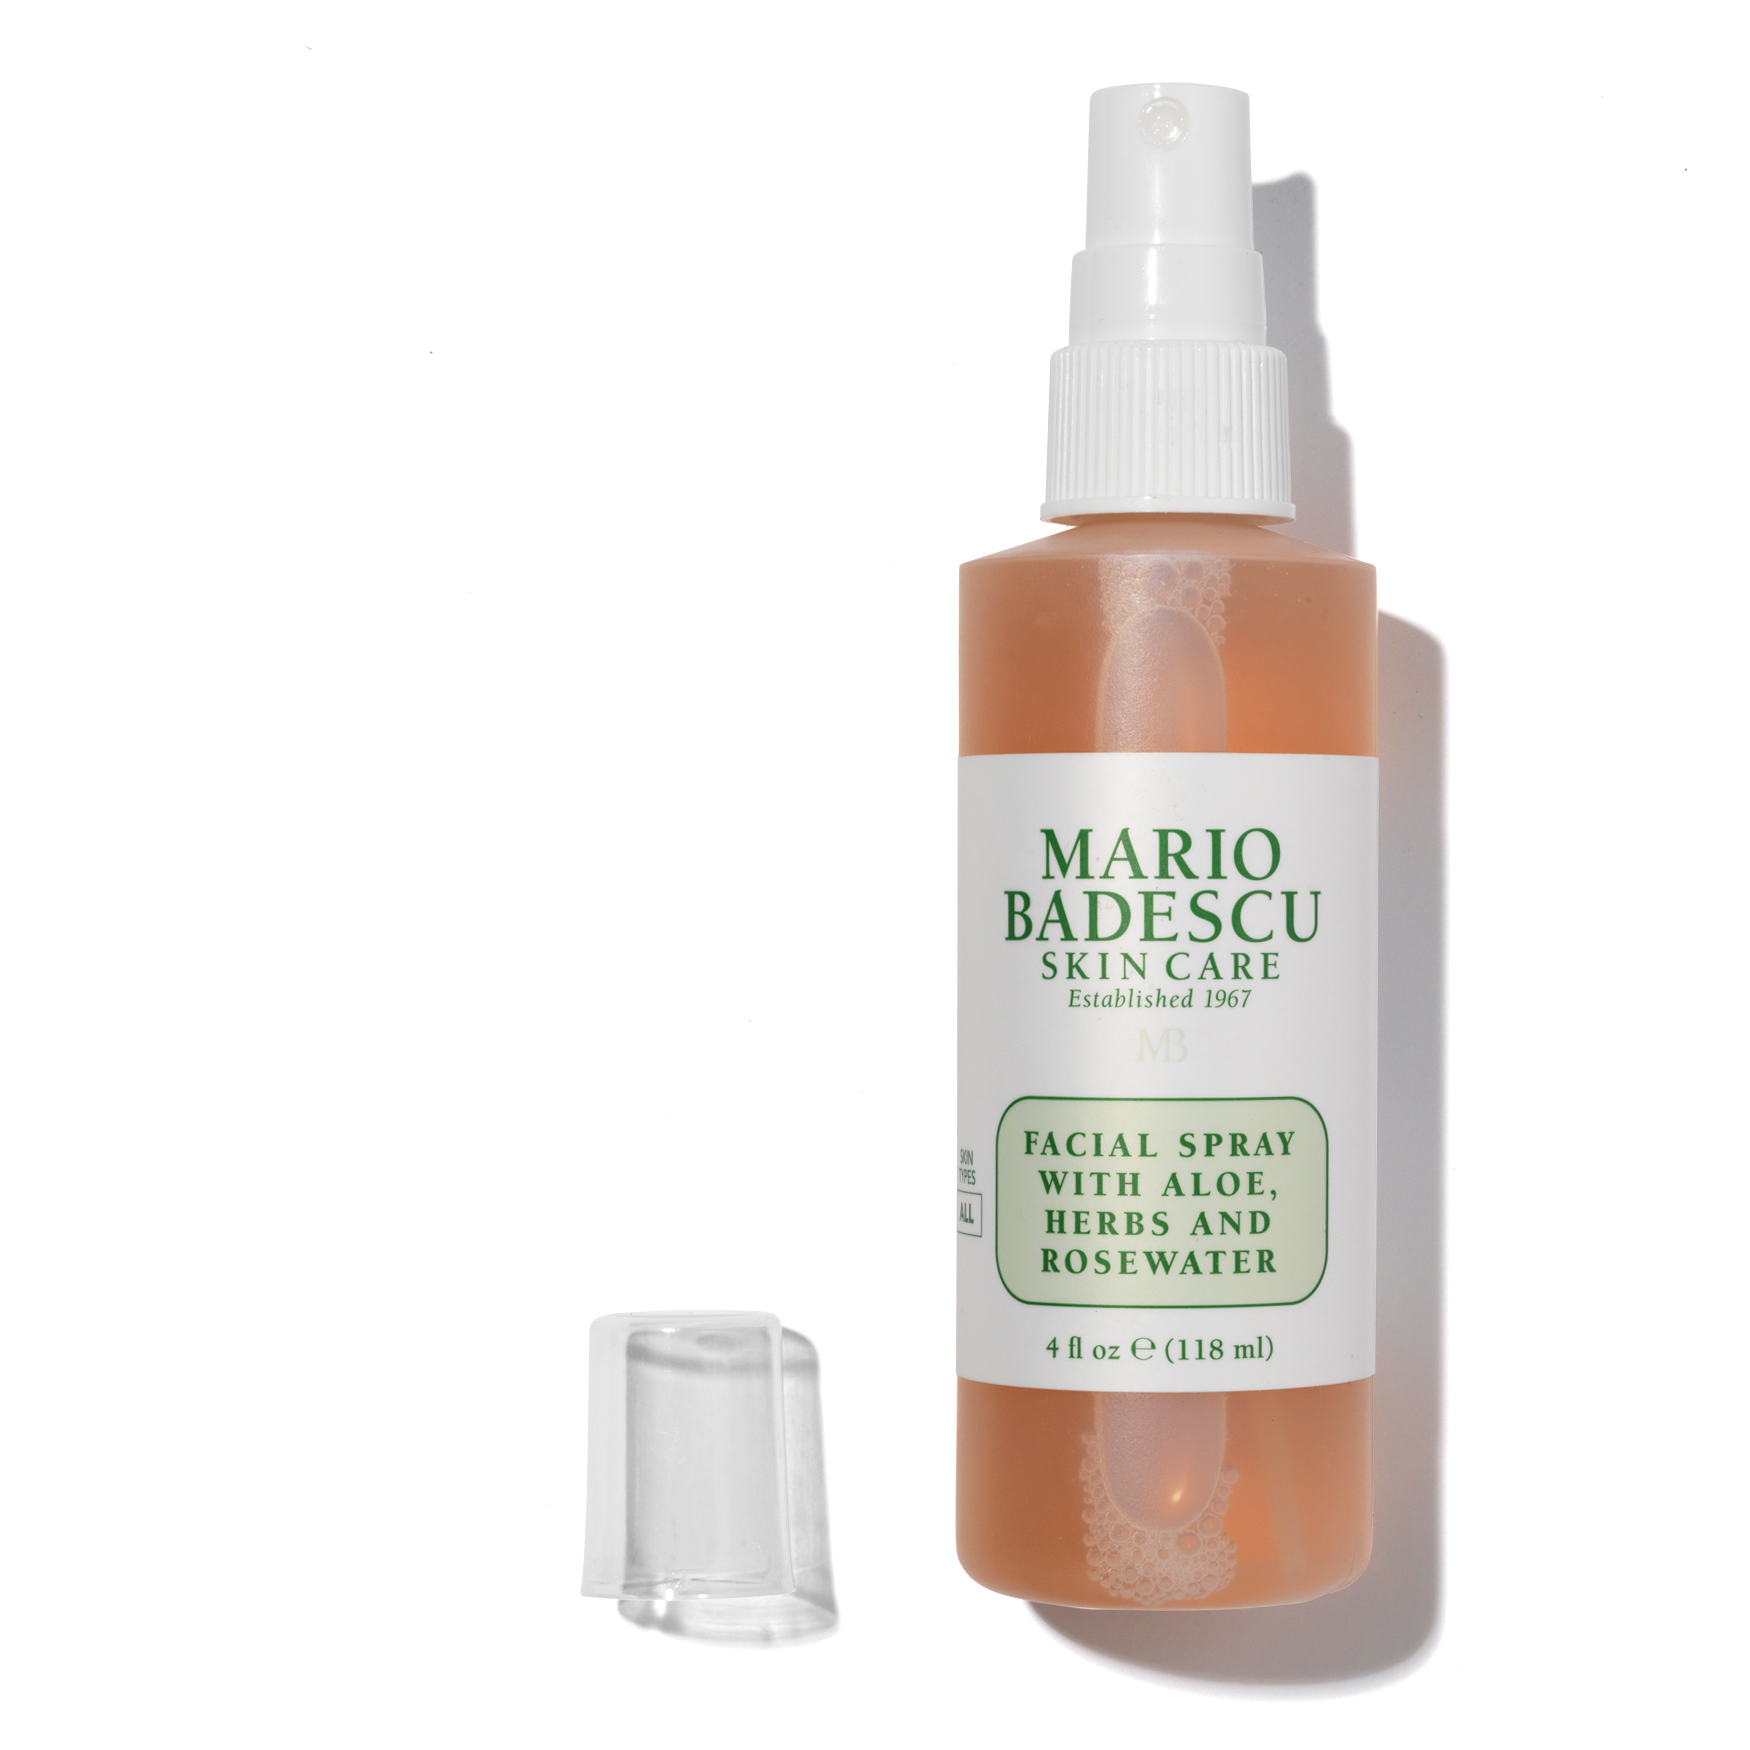 Mario Badescu Facial Spray With Aloe, Herbs And Rosewater | Space NK